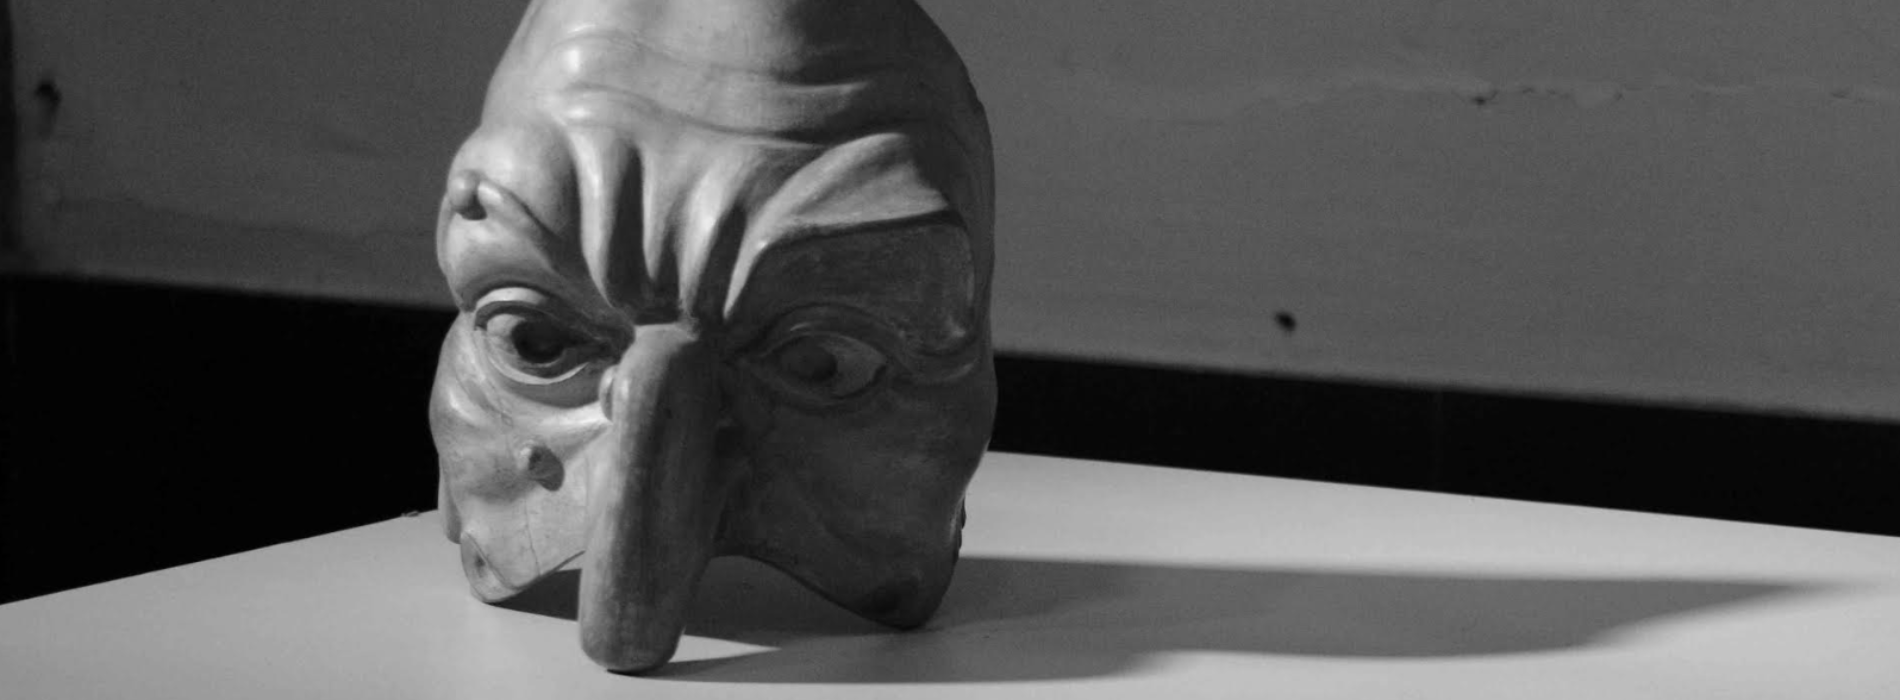 La Maschera dall’Atellana alla Commedia dell’Arte, la mostra